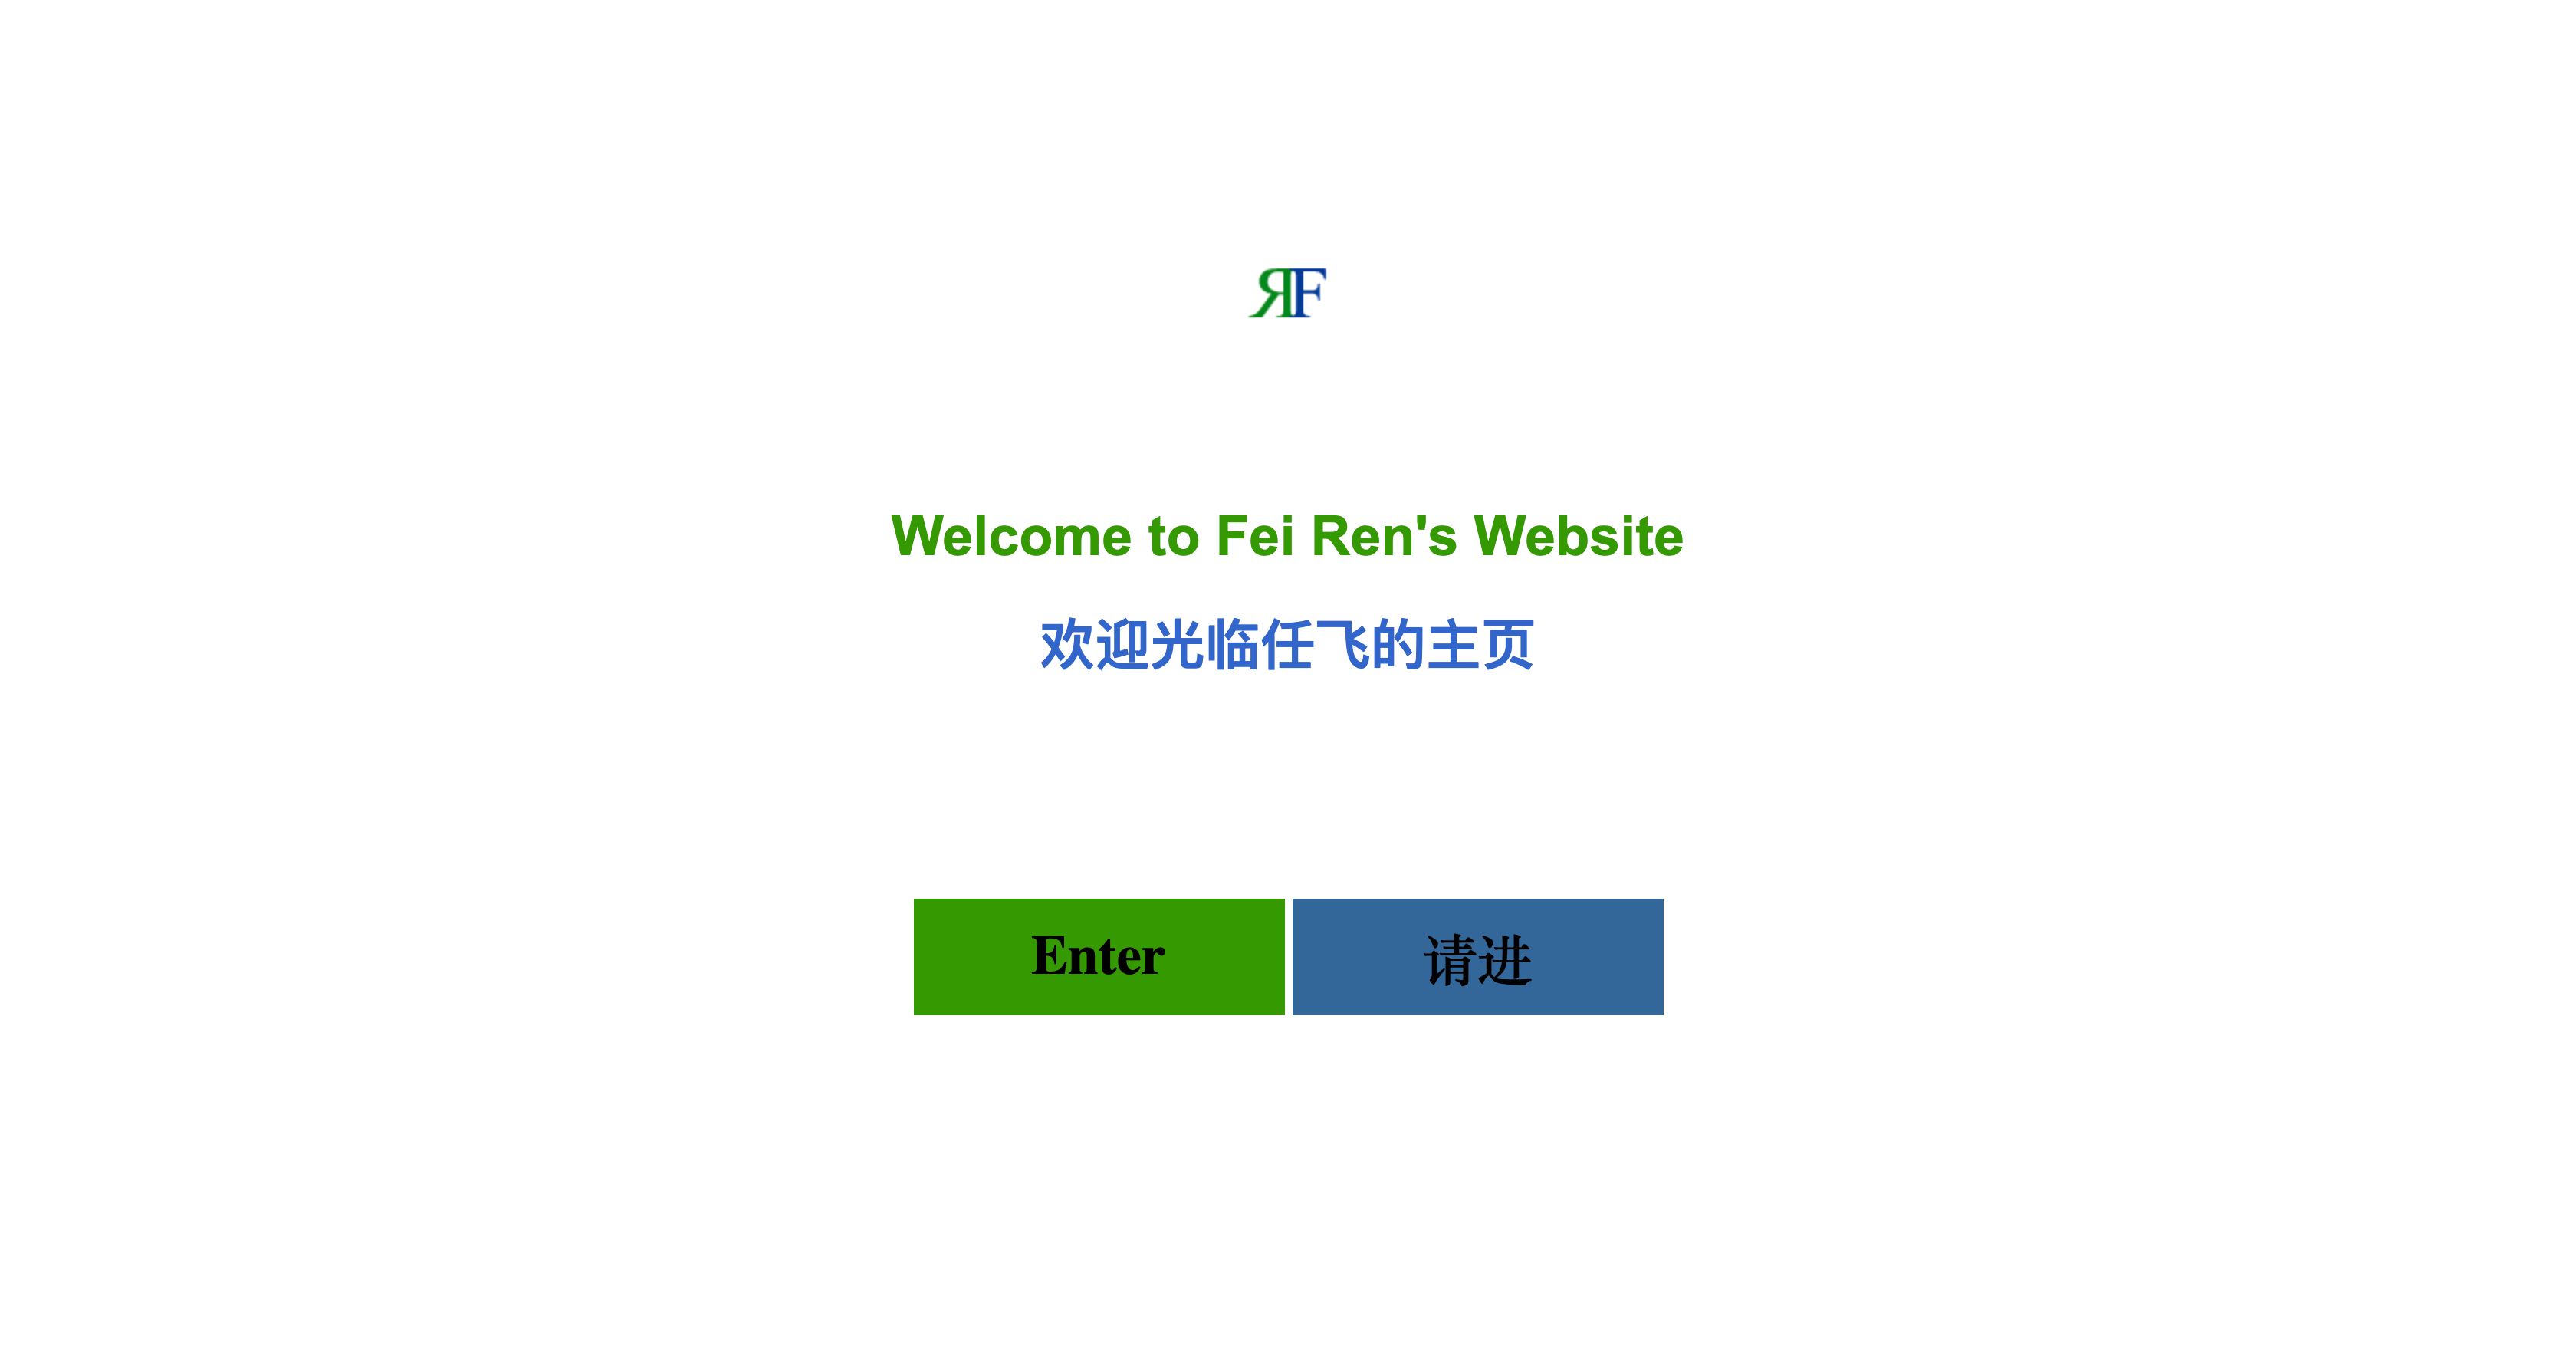 renfei.net在2005年的首页